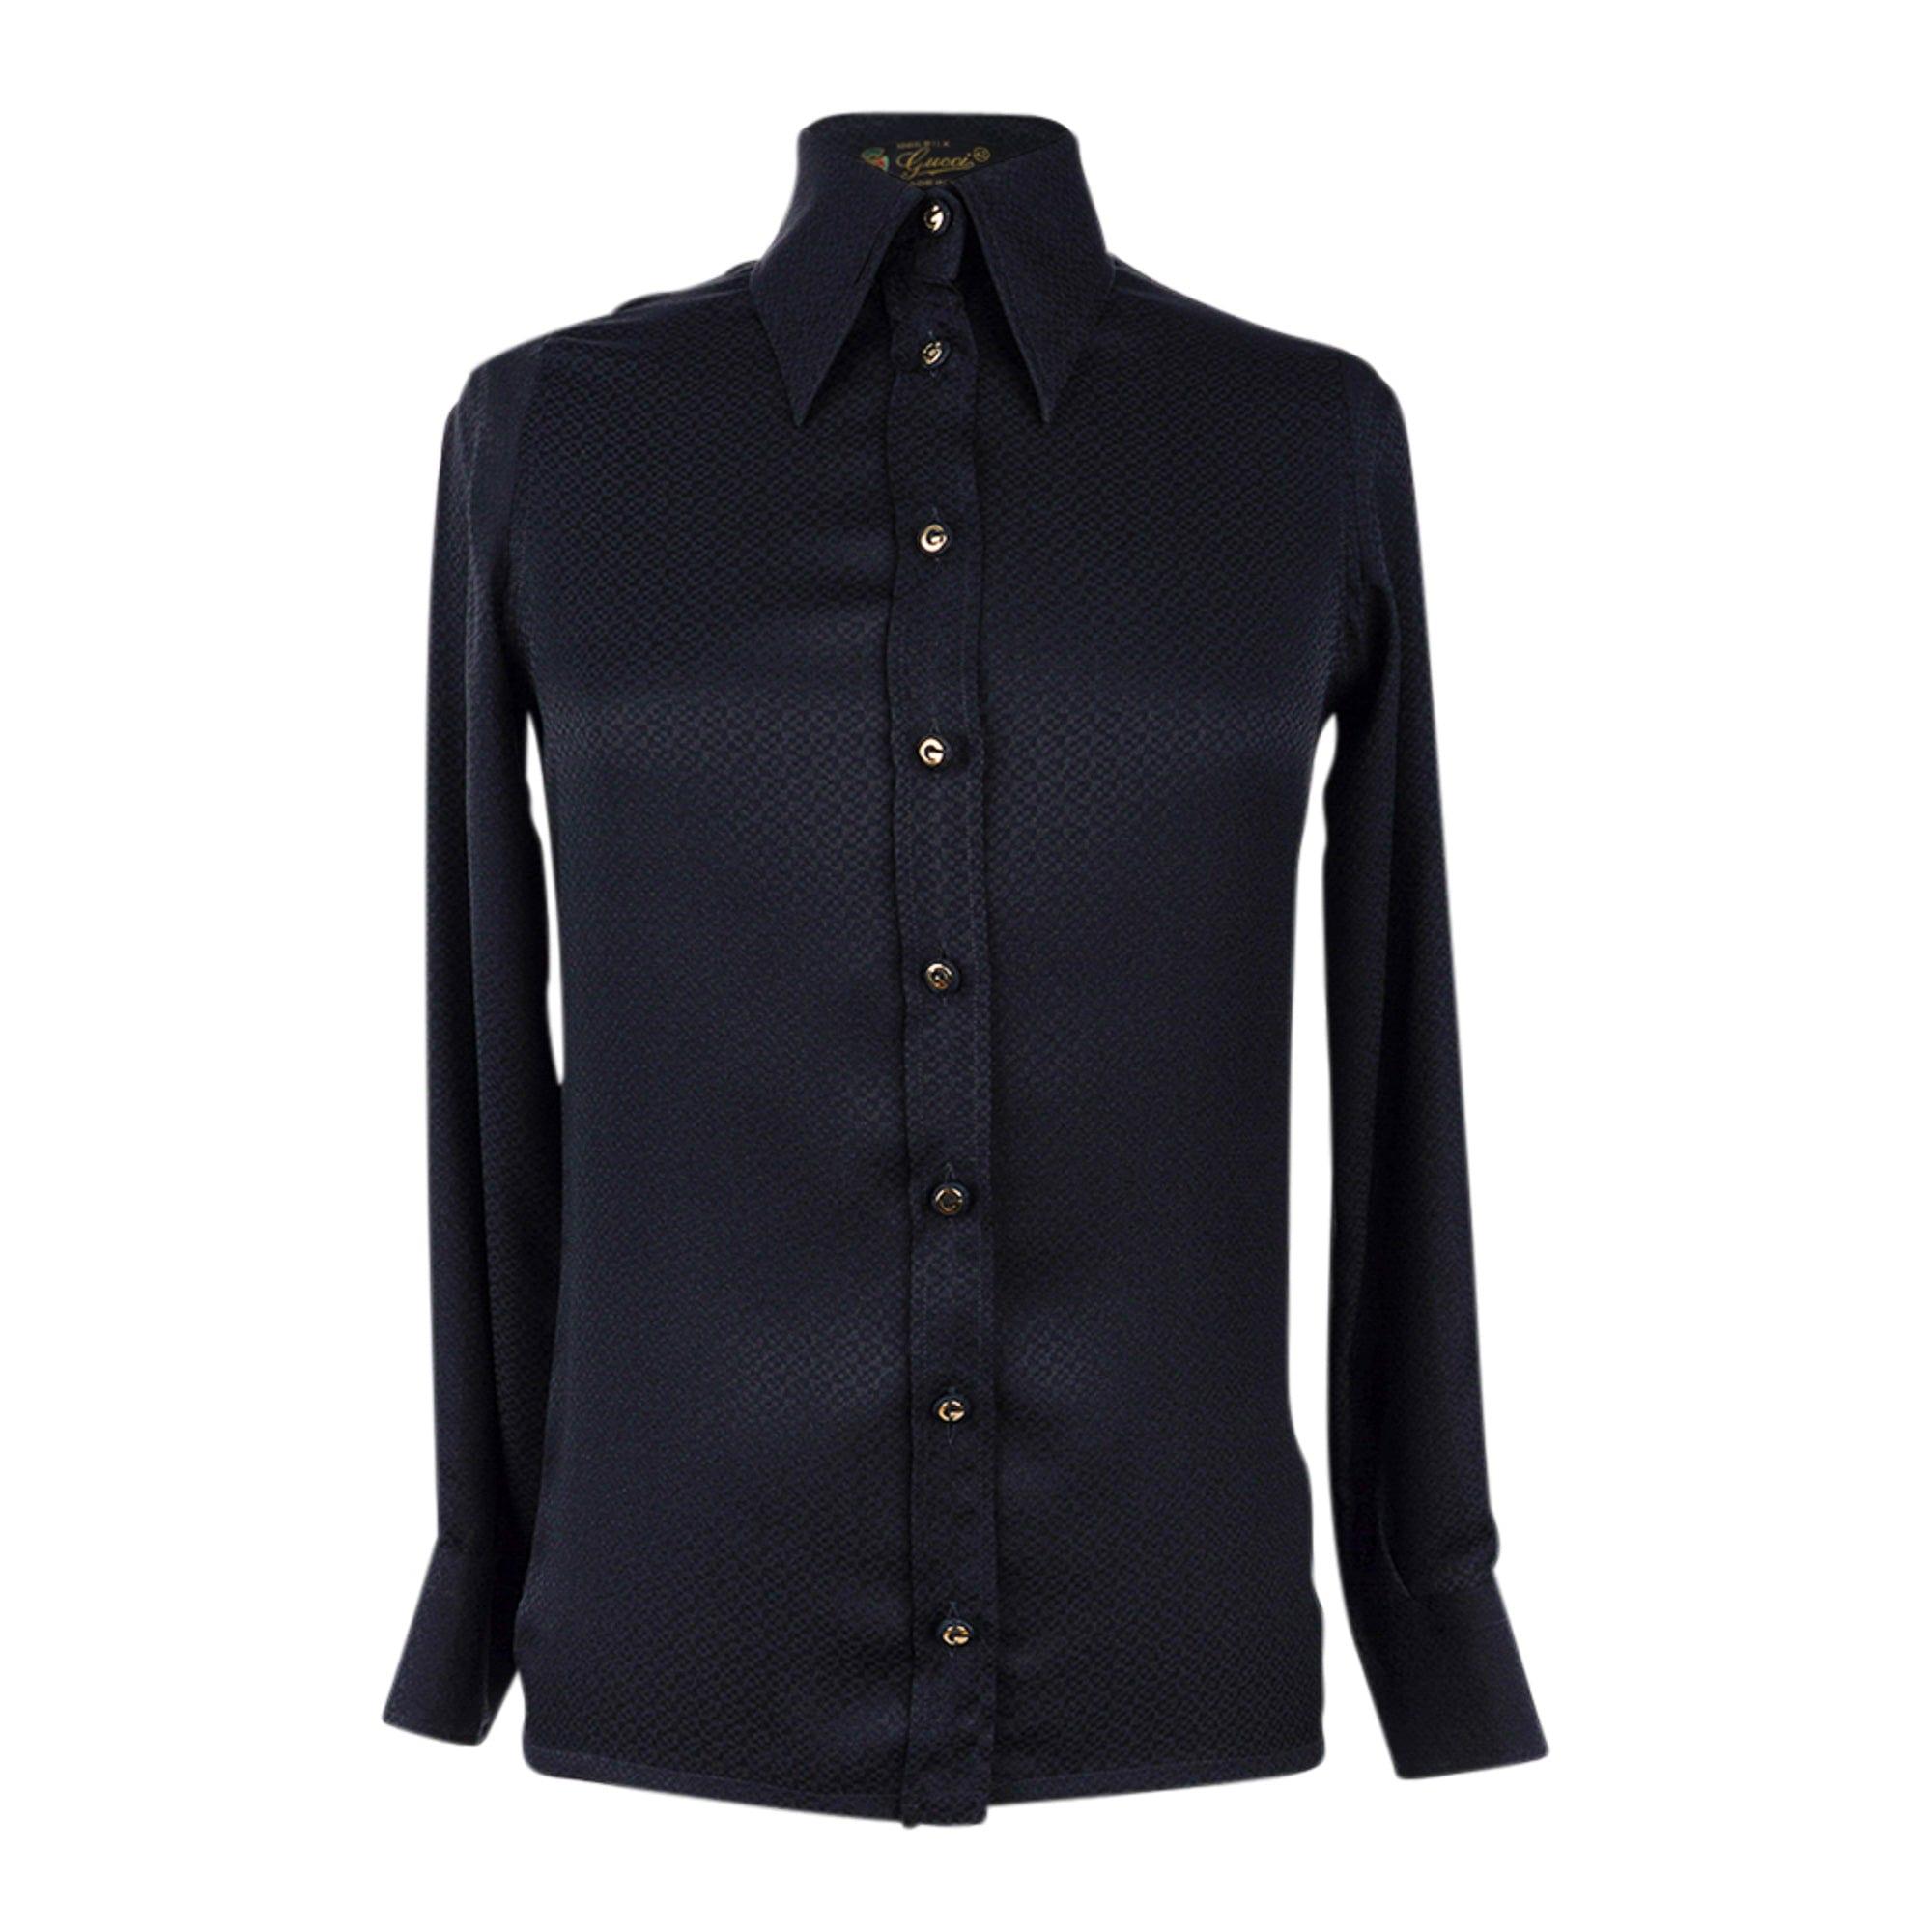 Chanel 01P Fantasy Tweed Vest / Top Zip Front High Neck 42 fits 6 to 8